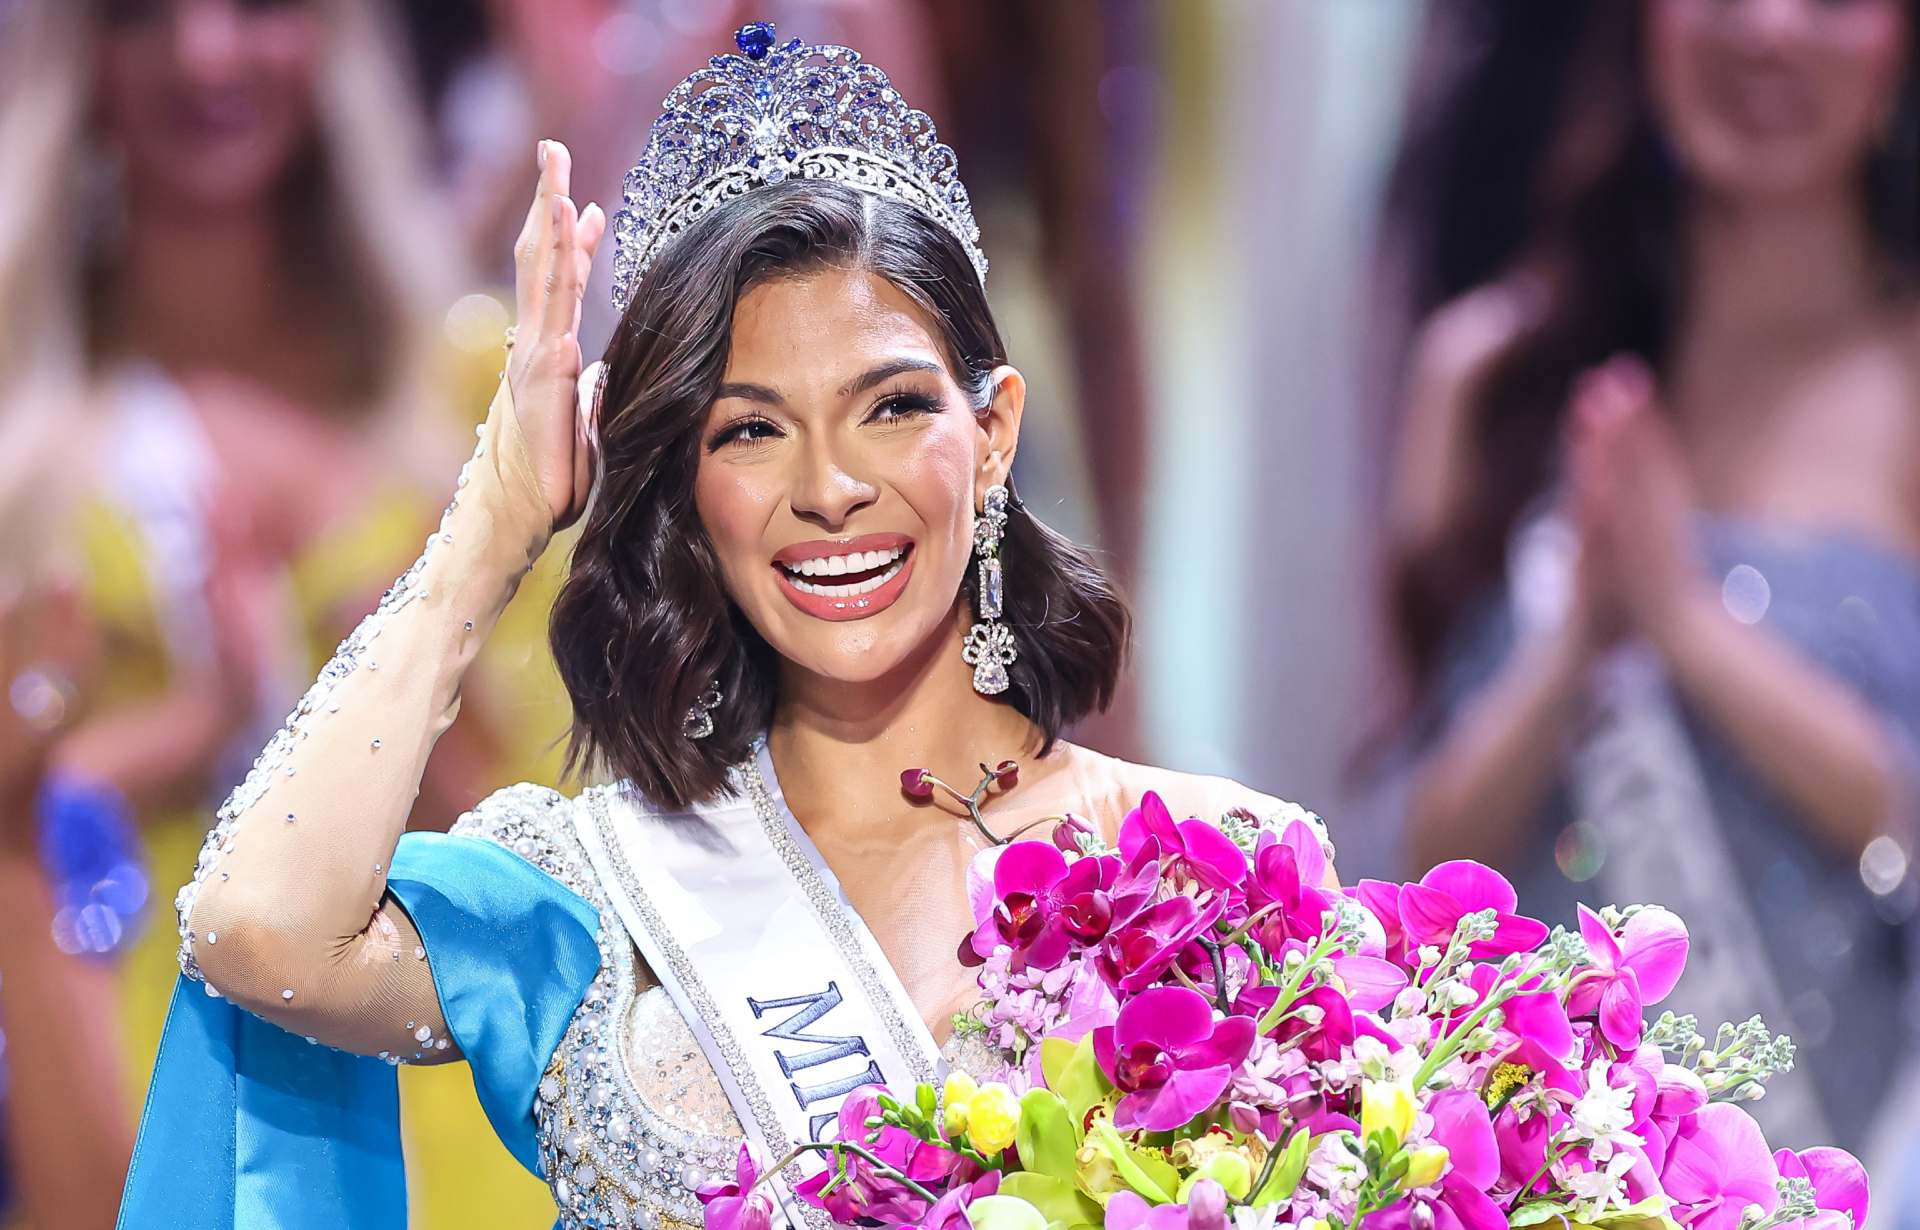 Sheynnis Palacios, Miss Universo 2023 la razón por la que le fascina